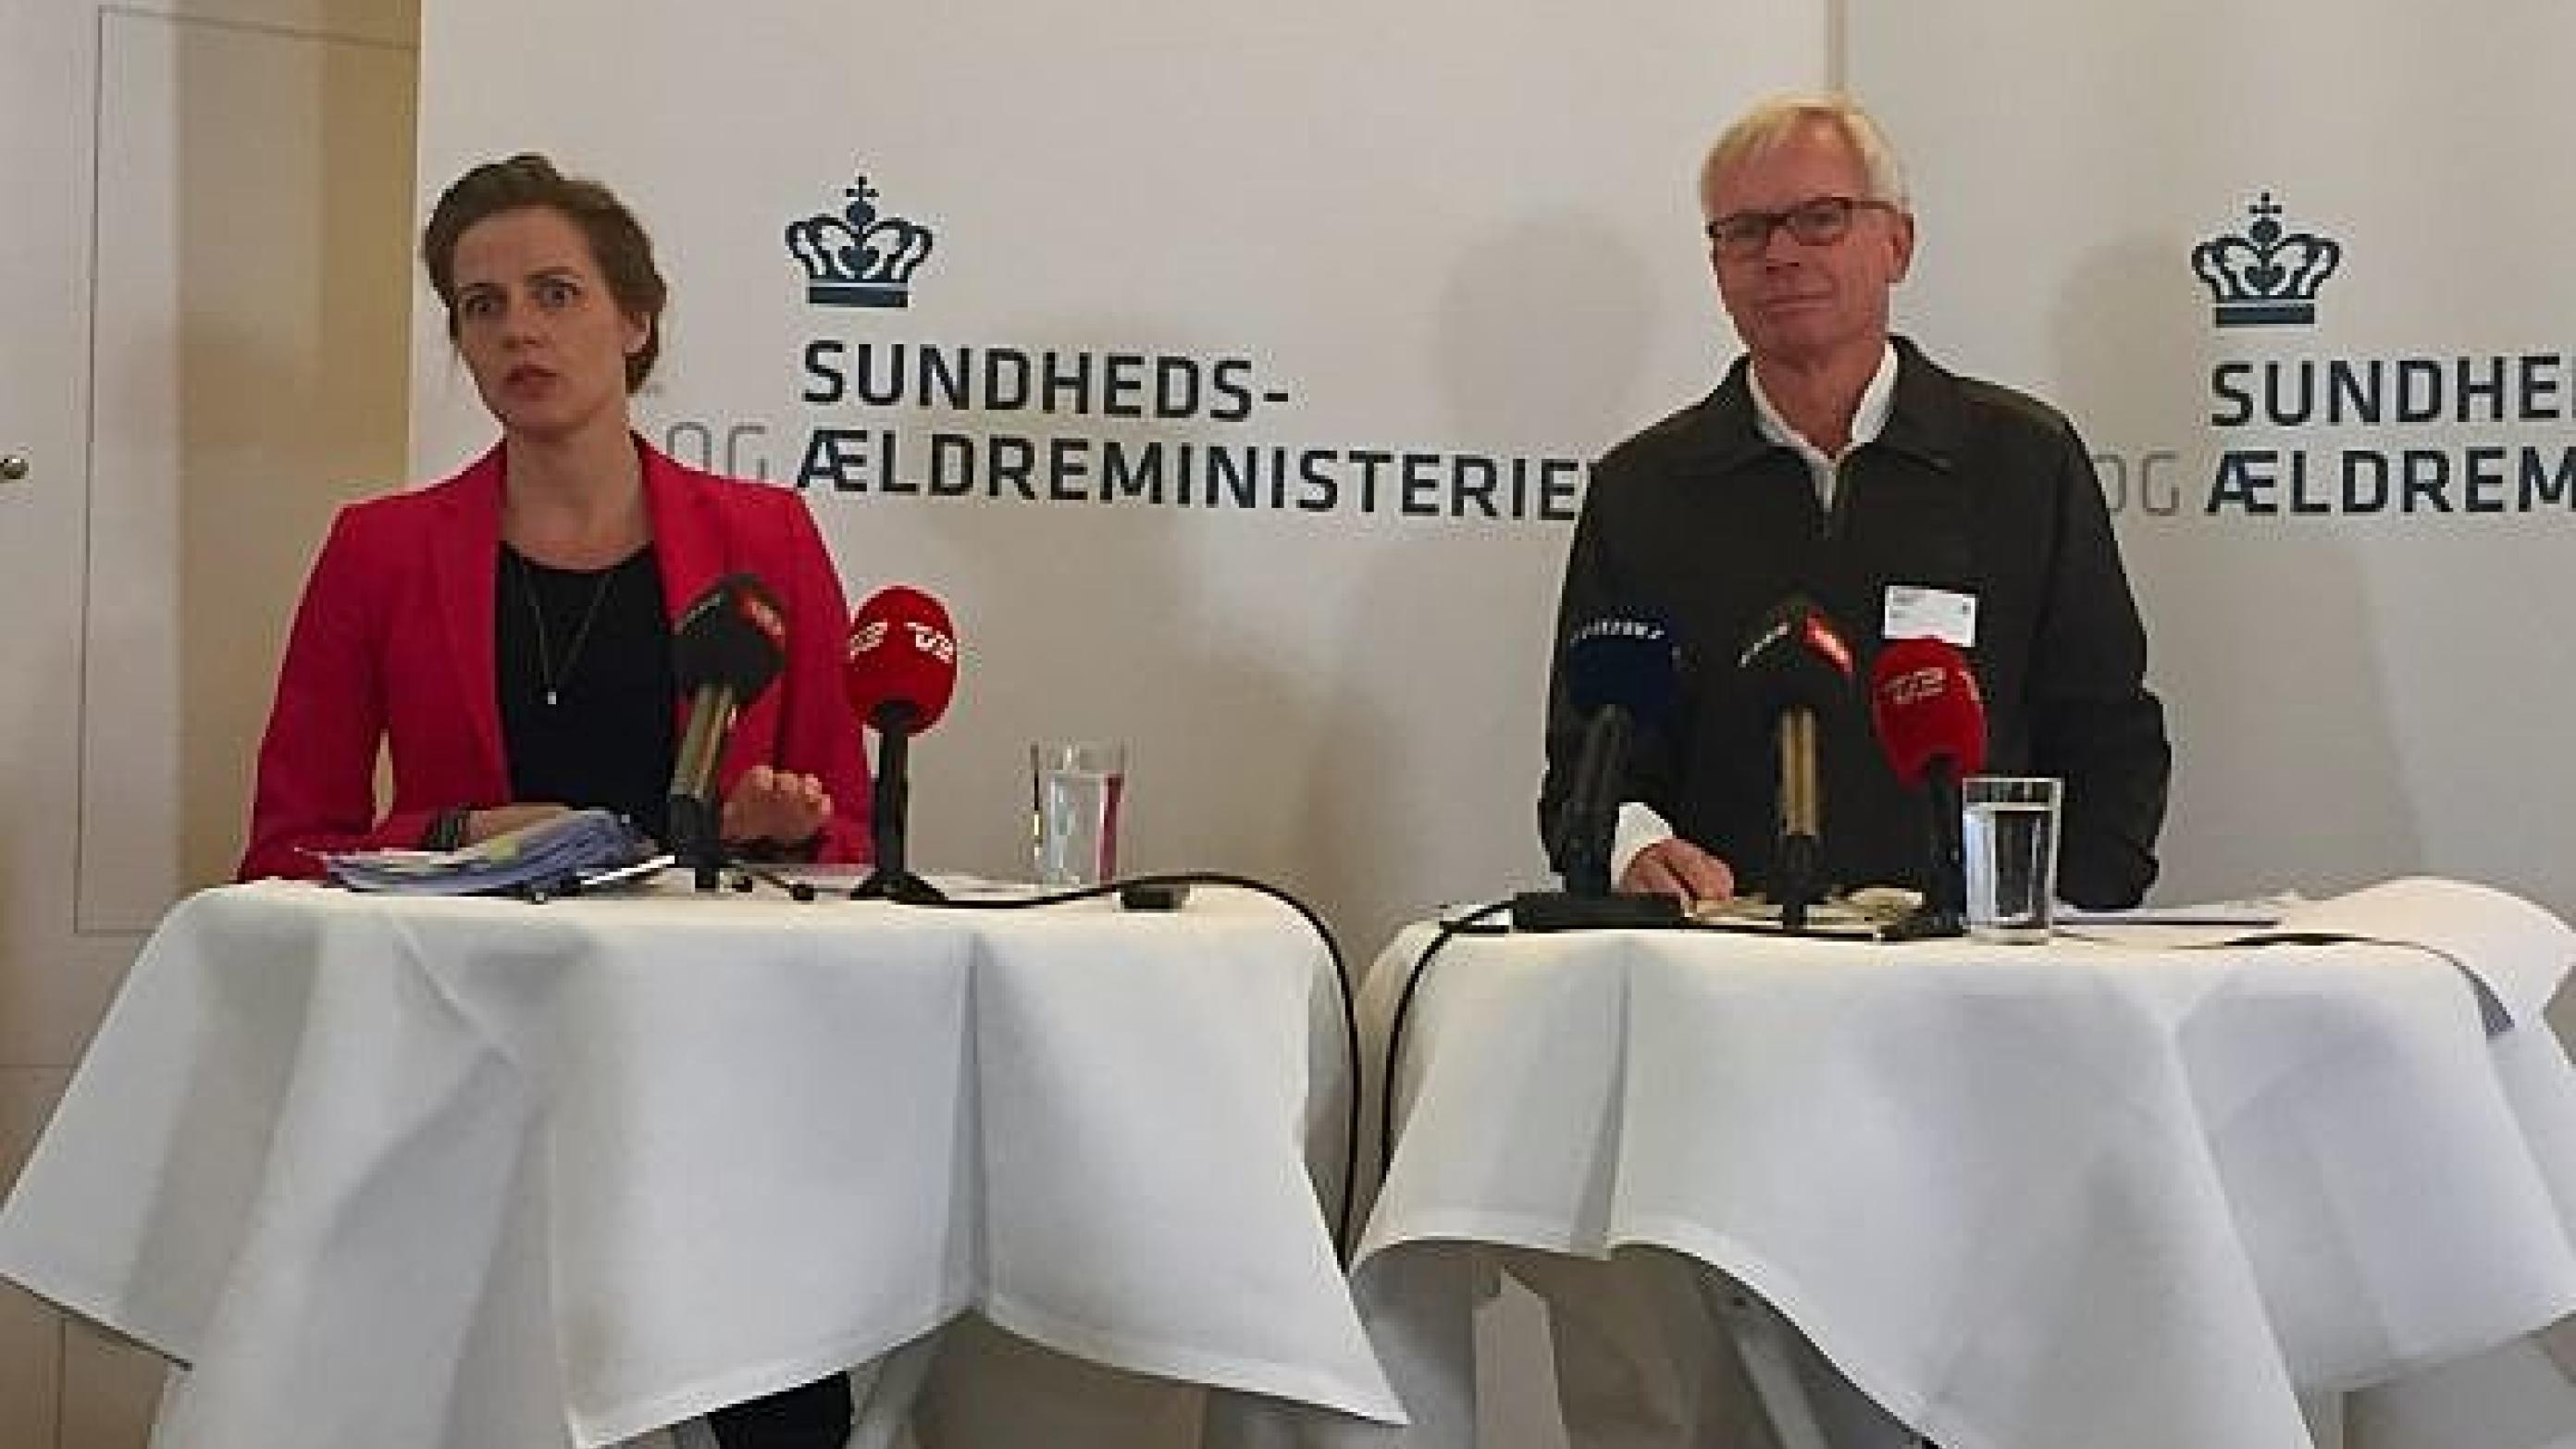 Sundhedsminister Ellen Trane Nørby (V) og formanden for Lægedækningsudvalget Martin Teilmann ved pressemøde onsdag. Foto: Anders Heissel